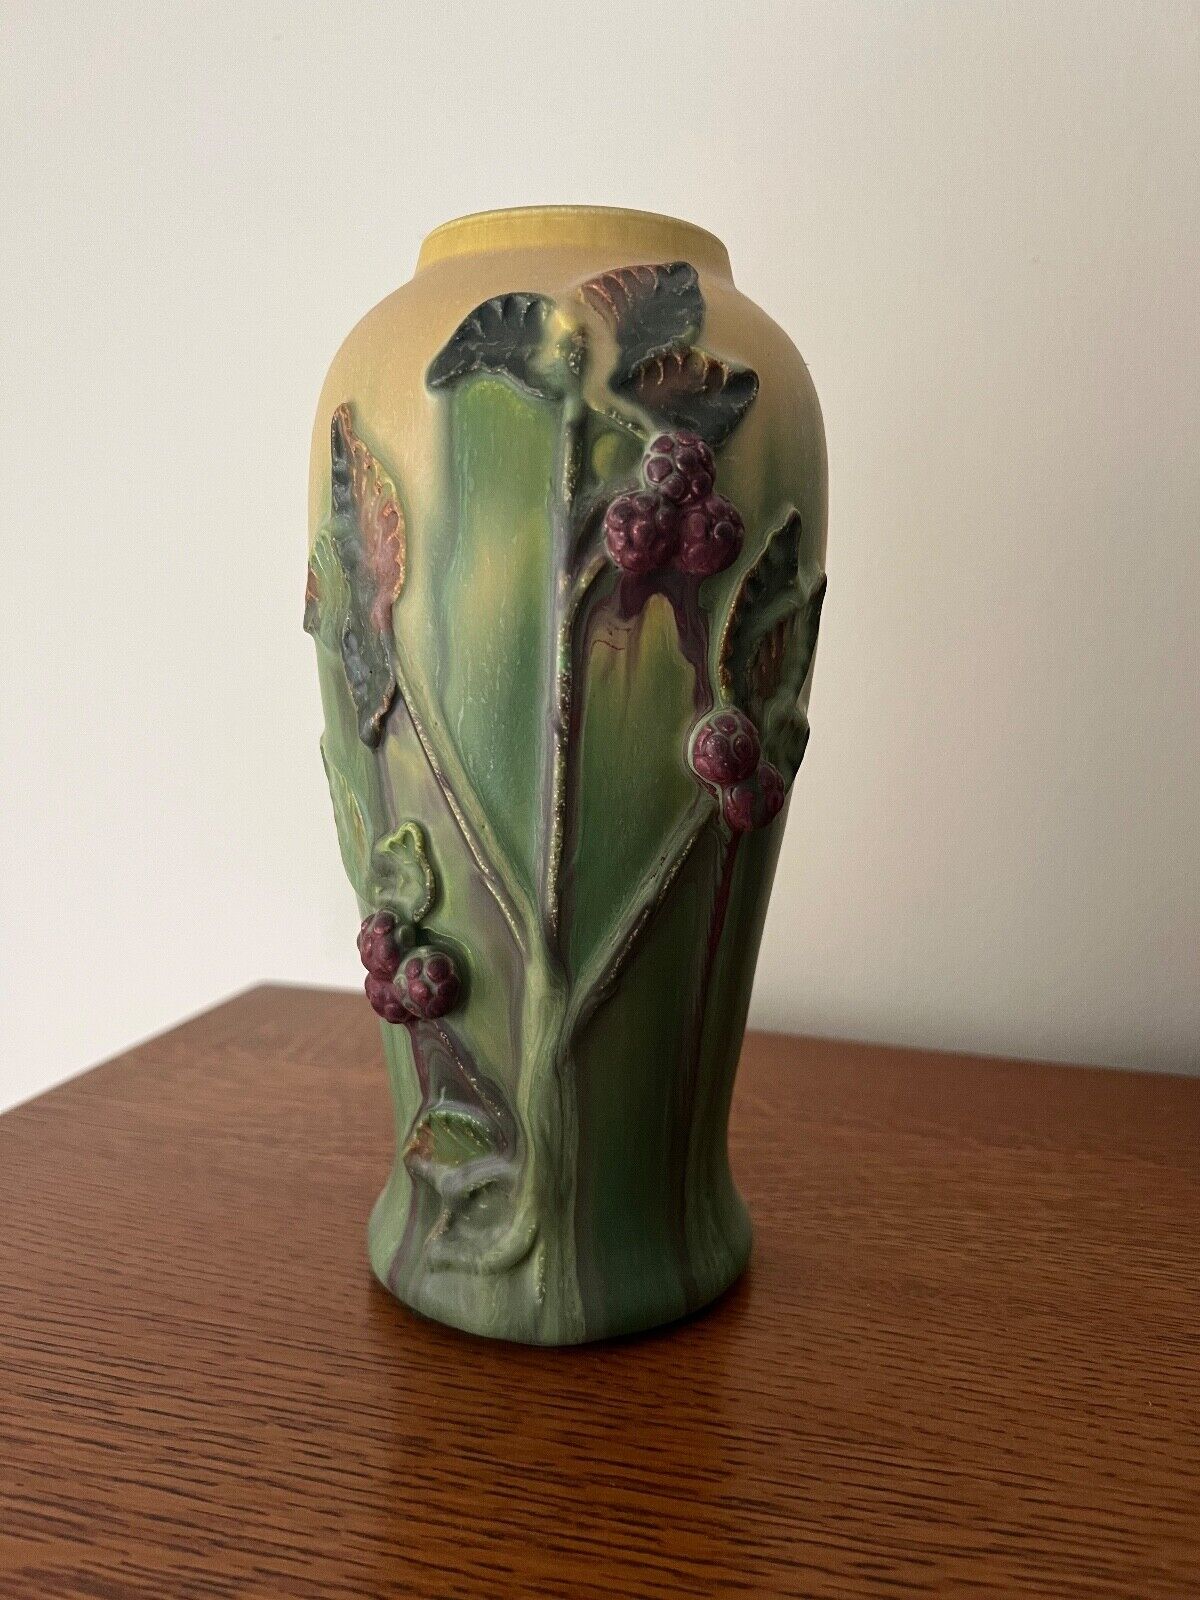 Ephraim Faience Pottery - Wild Raspberries Vase